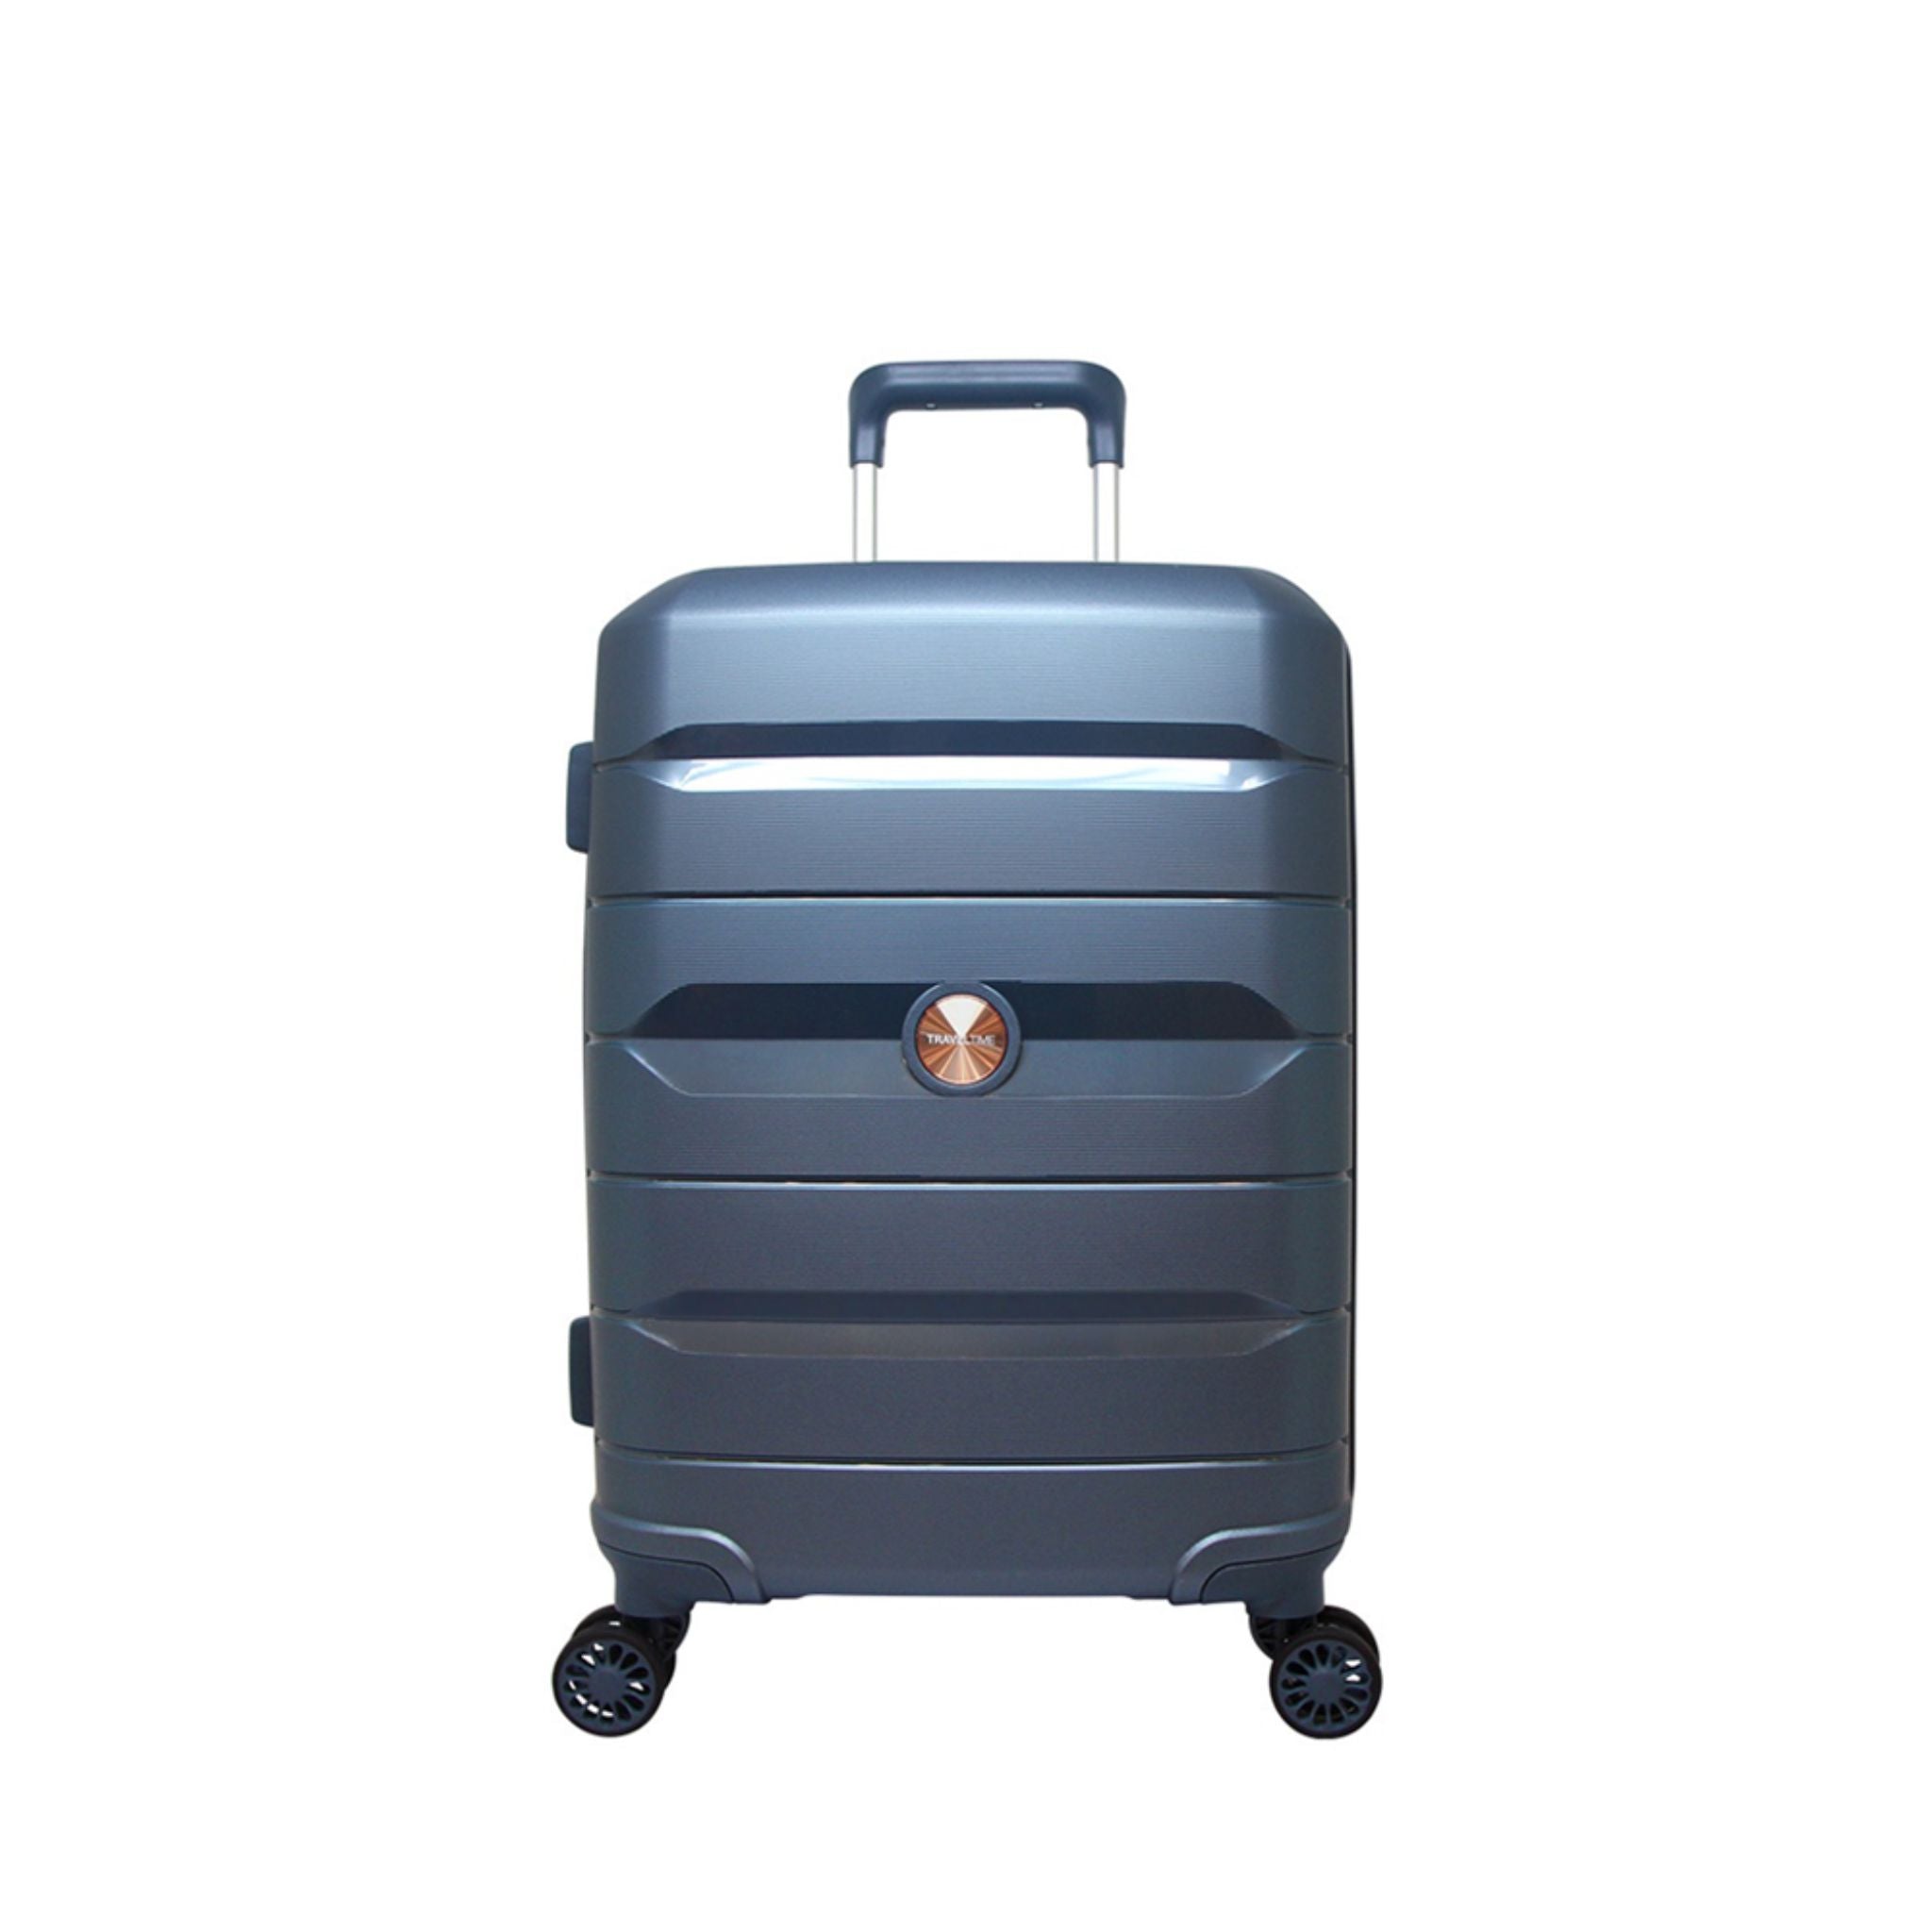 Travel Time 20" Hard Case Luggage - Ice Blue